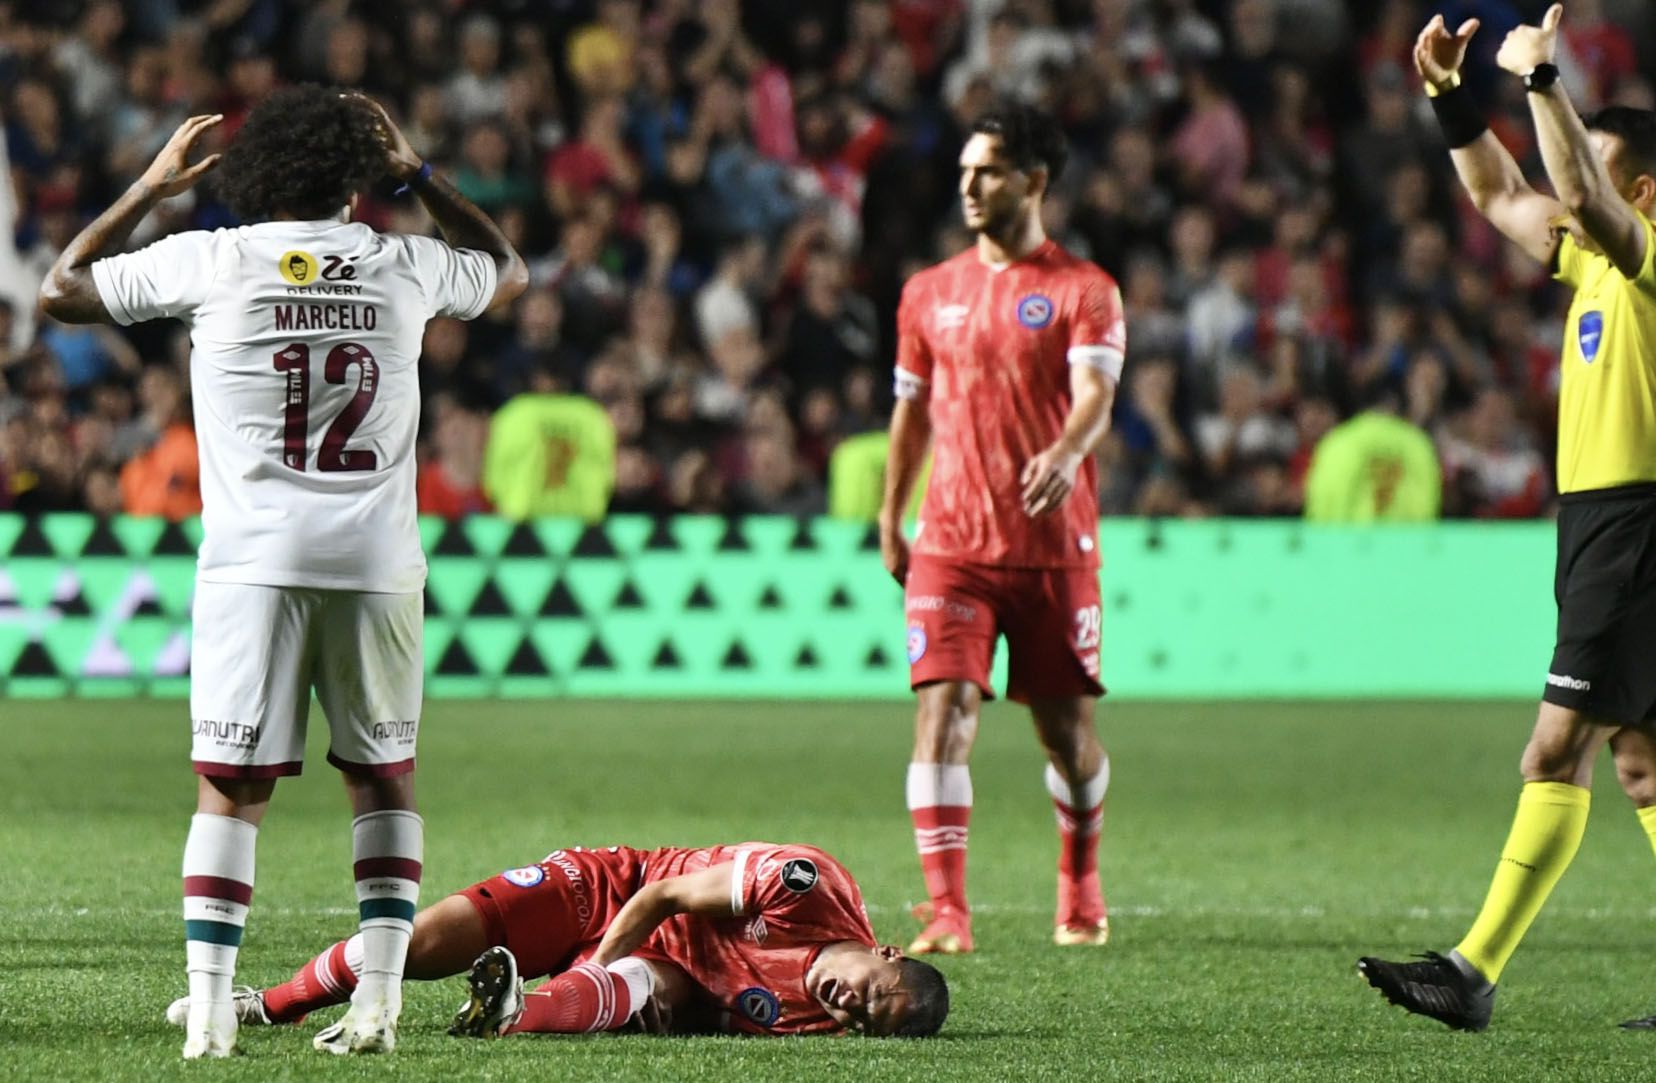 El planchazo de Marcelo que le produjo una escalofriante lesión a un jugador de Argentinos: el desconsolado llanto del brasileño - Infobae